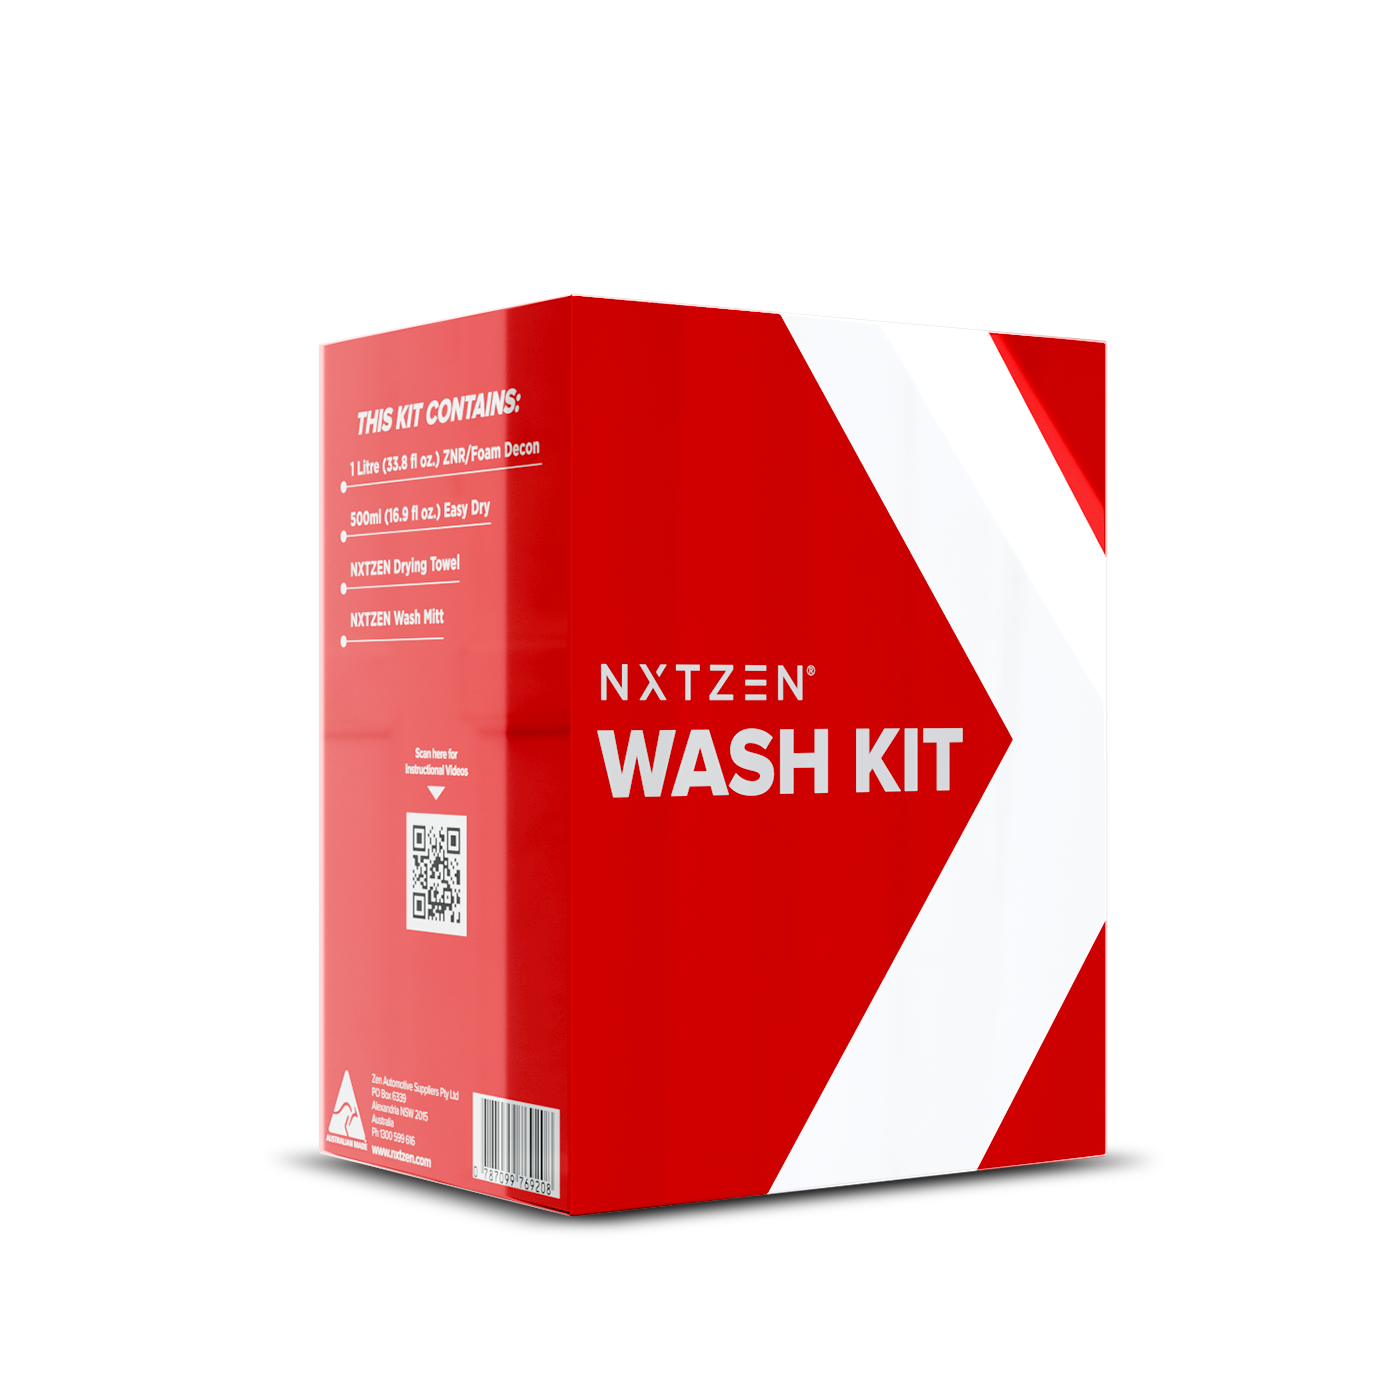 Nxtzen Wash Kit with 1 Liter of Foam Decon